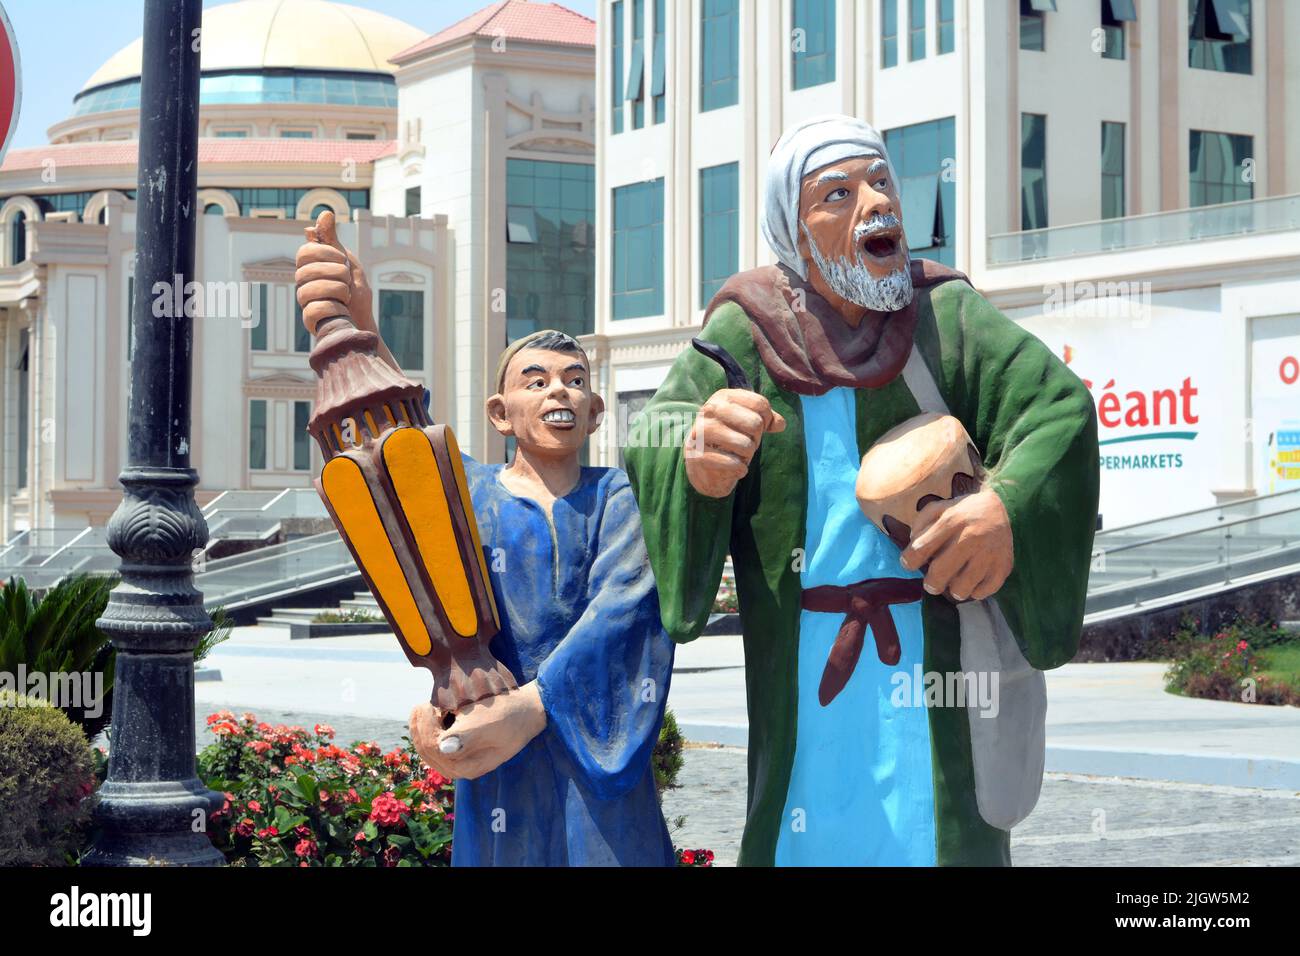 Le Caire, l'Egypte, 6 juin 2022: Un mesaharati et un enfant avec une lanterne faneuse islamique sur une décoration du Ramadan dans la rue, il est une personne qui se réveille oth Banque D'Images